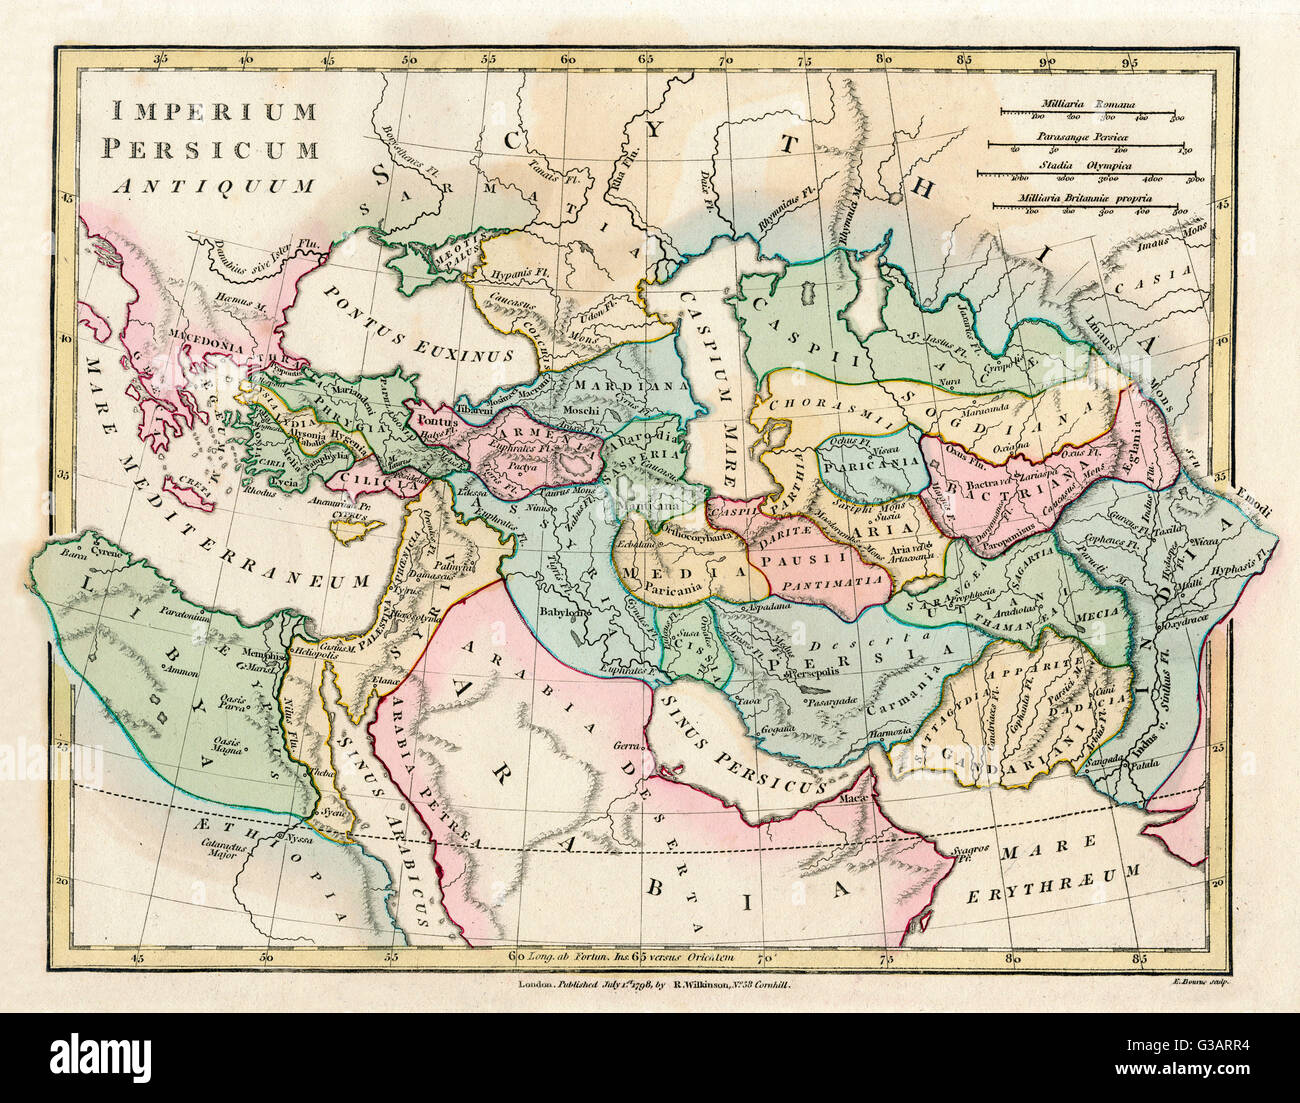 Site de l'Ancien Empire perse, englobant la Grèce au nord-ouest, l'Arabie au sud-est, l'Égypte et la Libye au sud-ouest et en profondeur dans le Caucase du nord est. Date : 1798 Banque D'Images